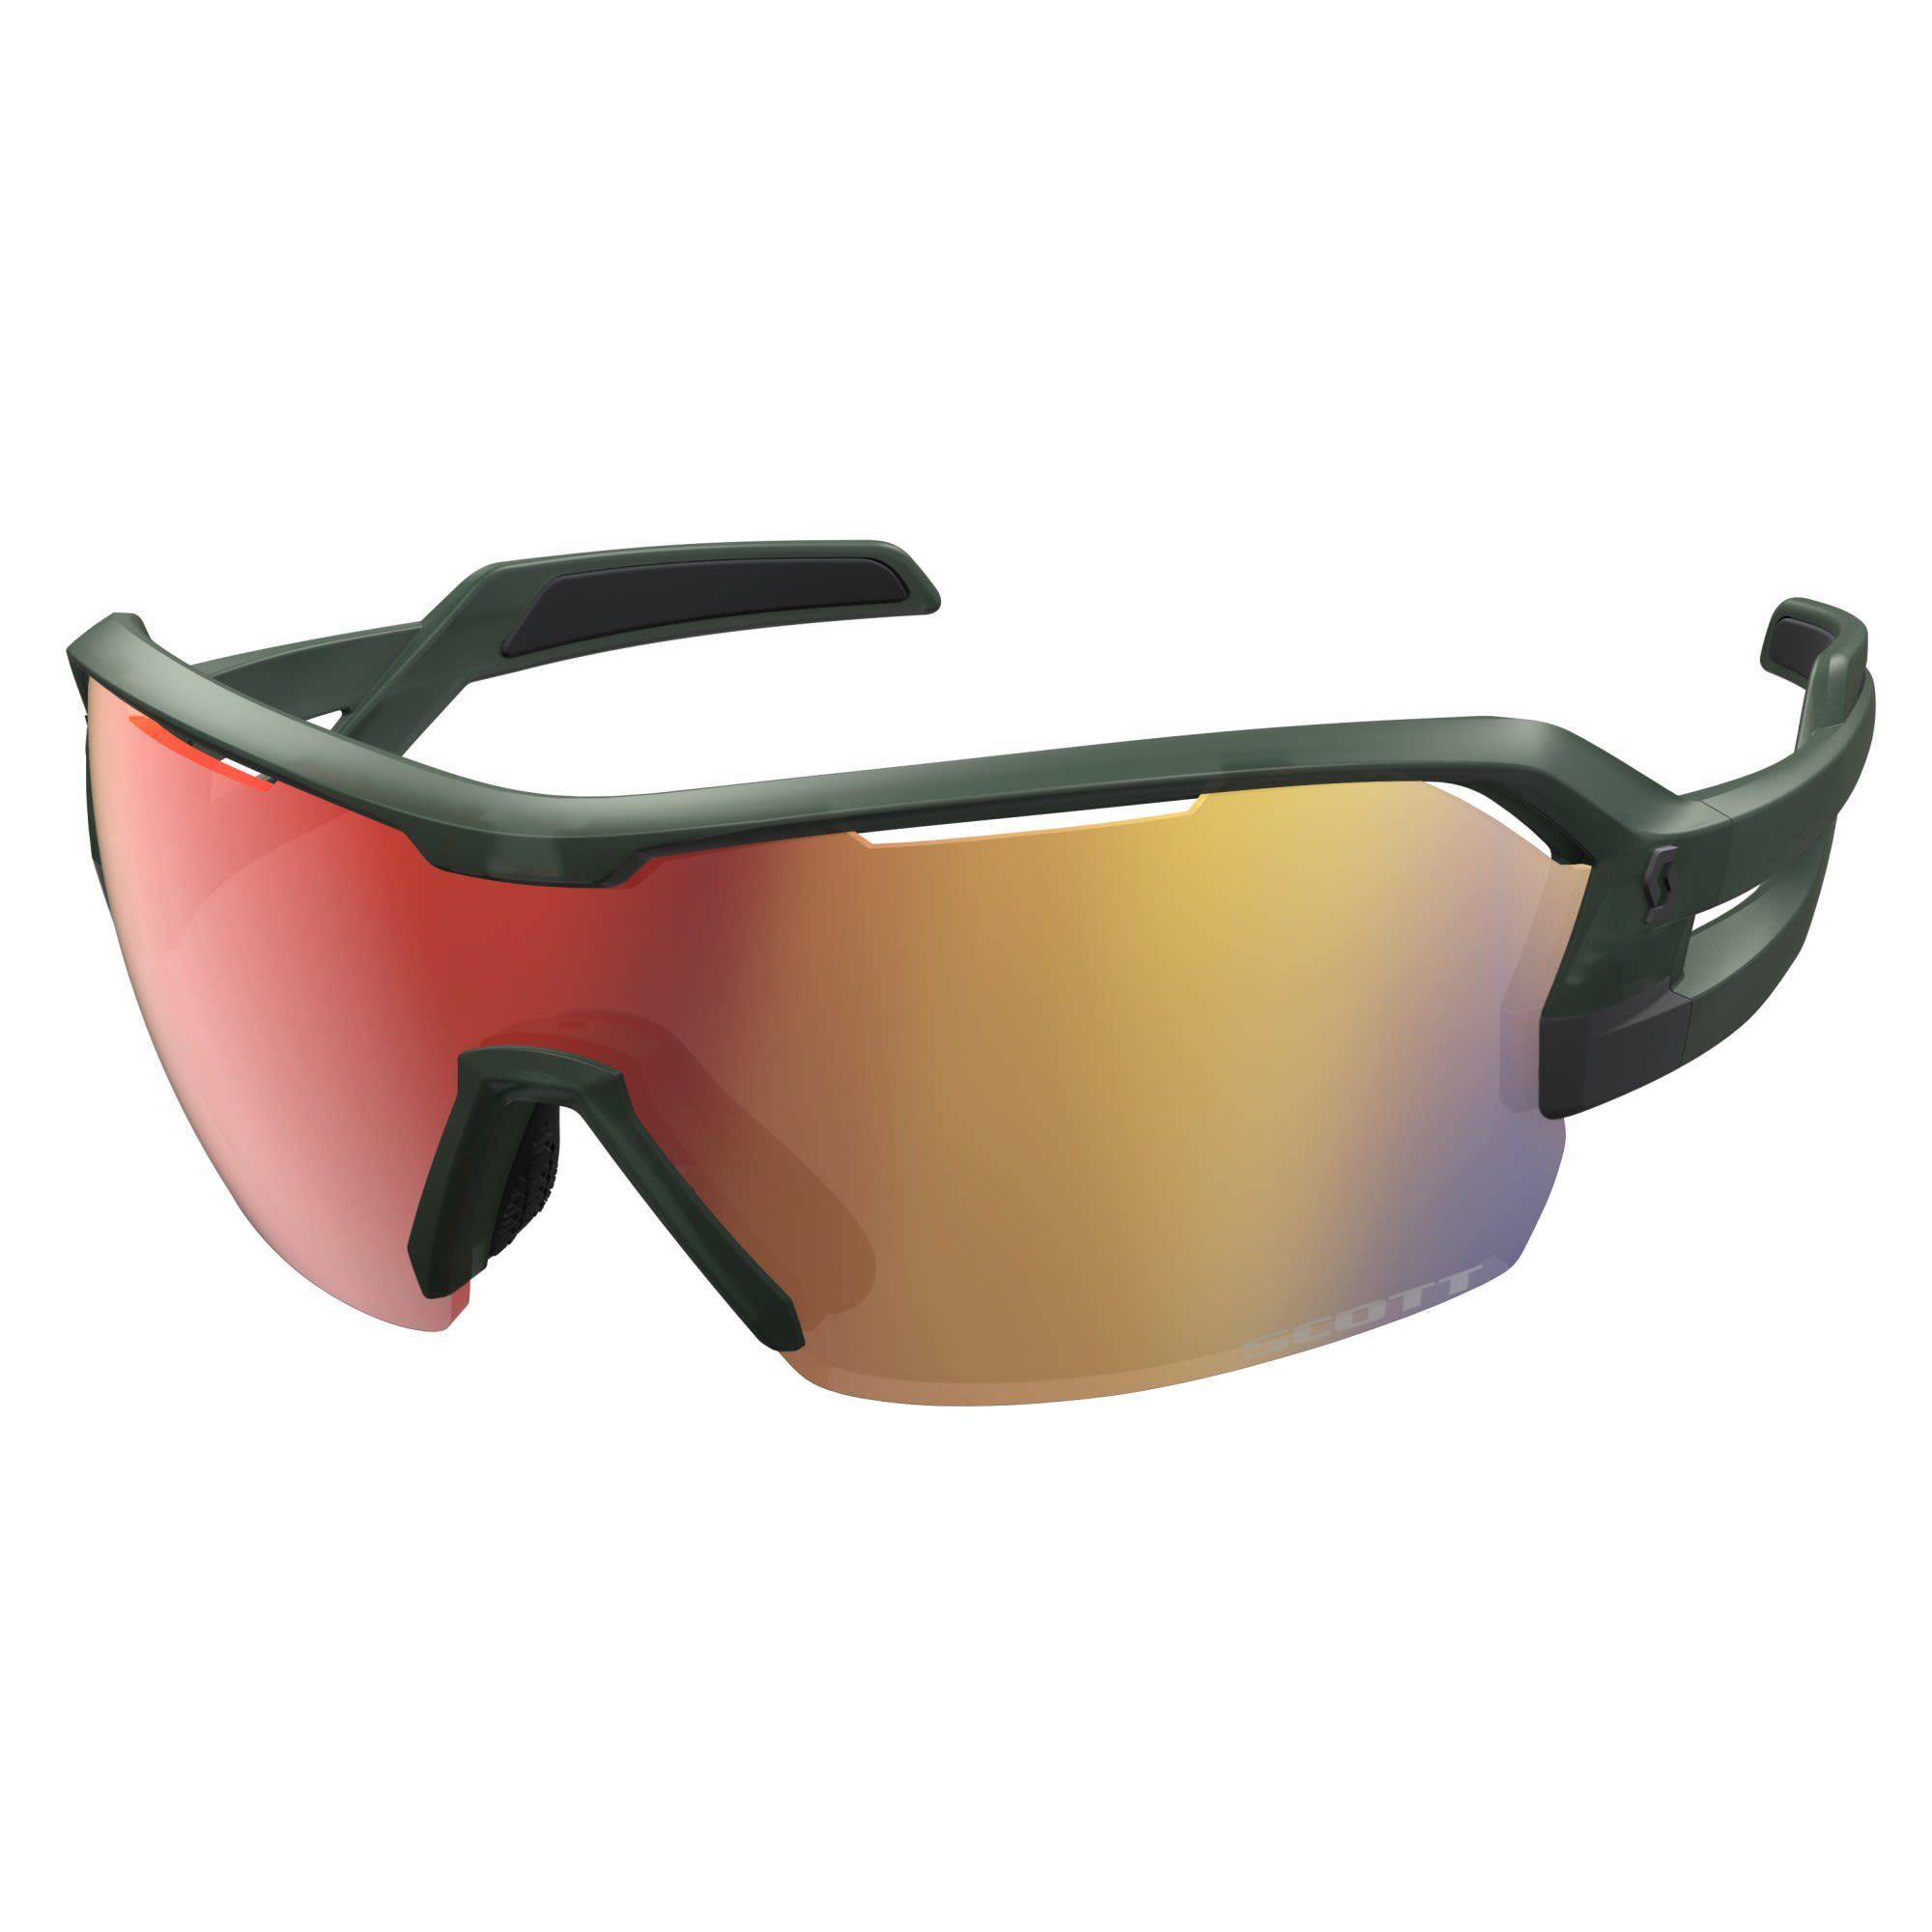 Scott Fahrradbrille Scott Khaki - Enhancer Sunglasses - Green Red Accessoires Clear Spur Chrome